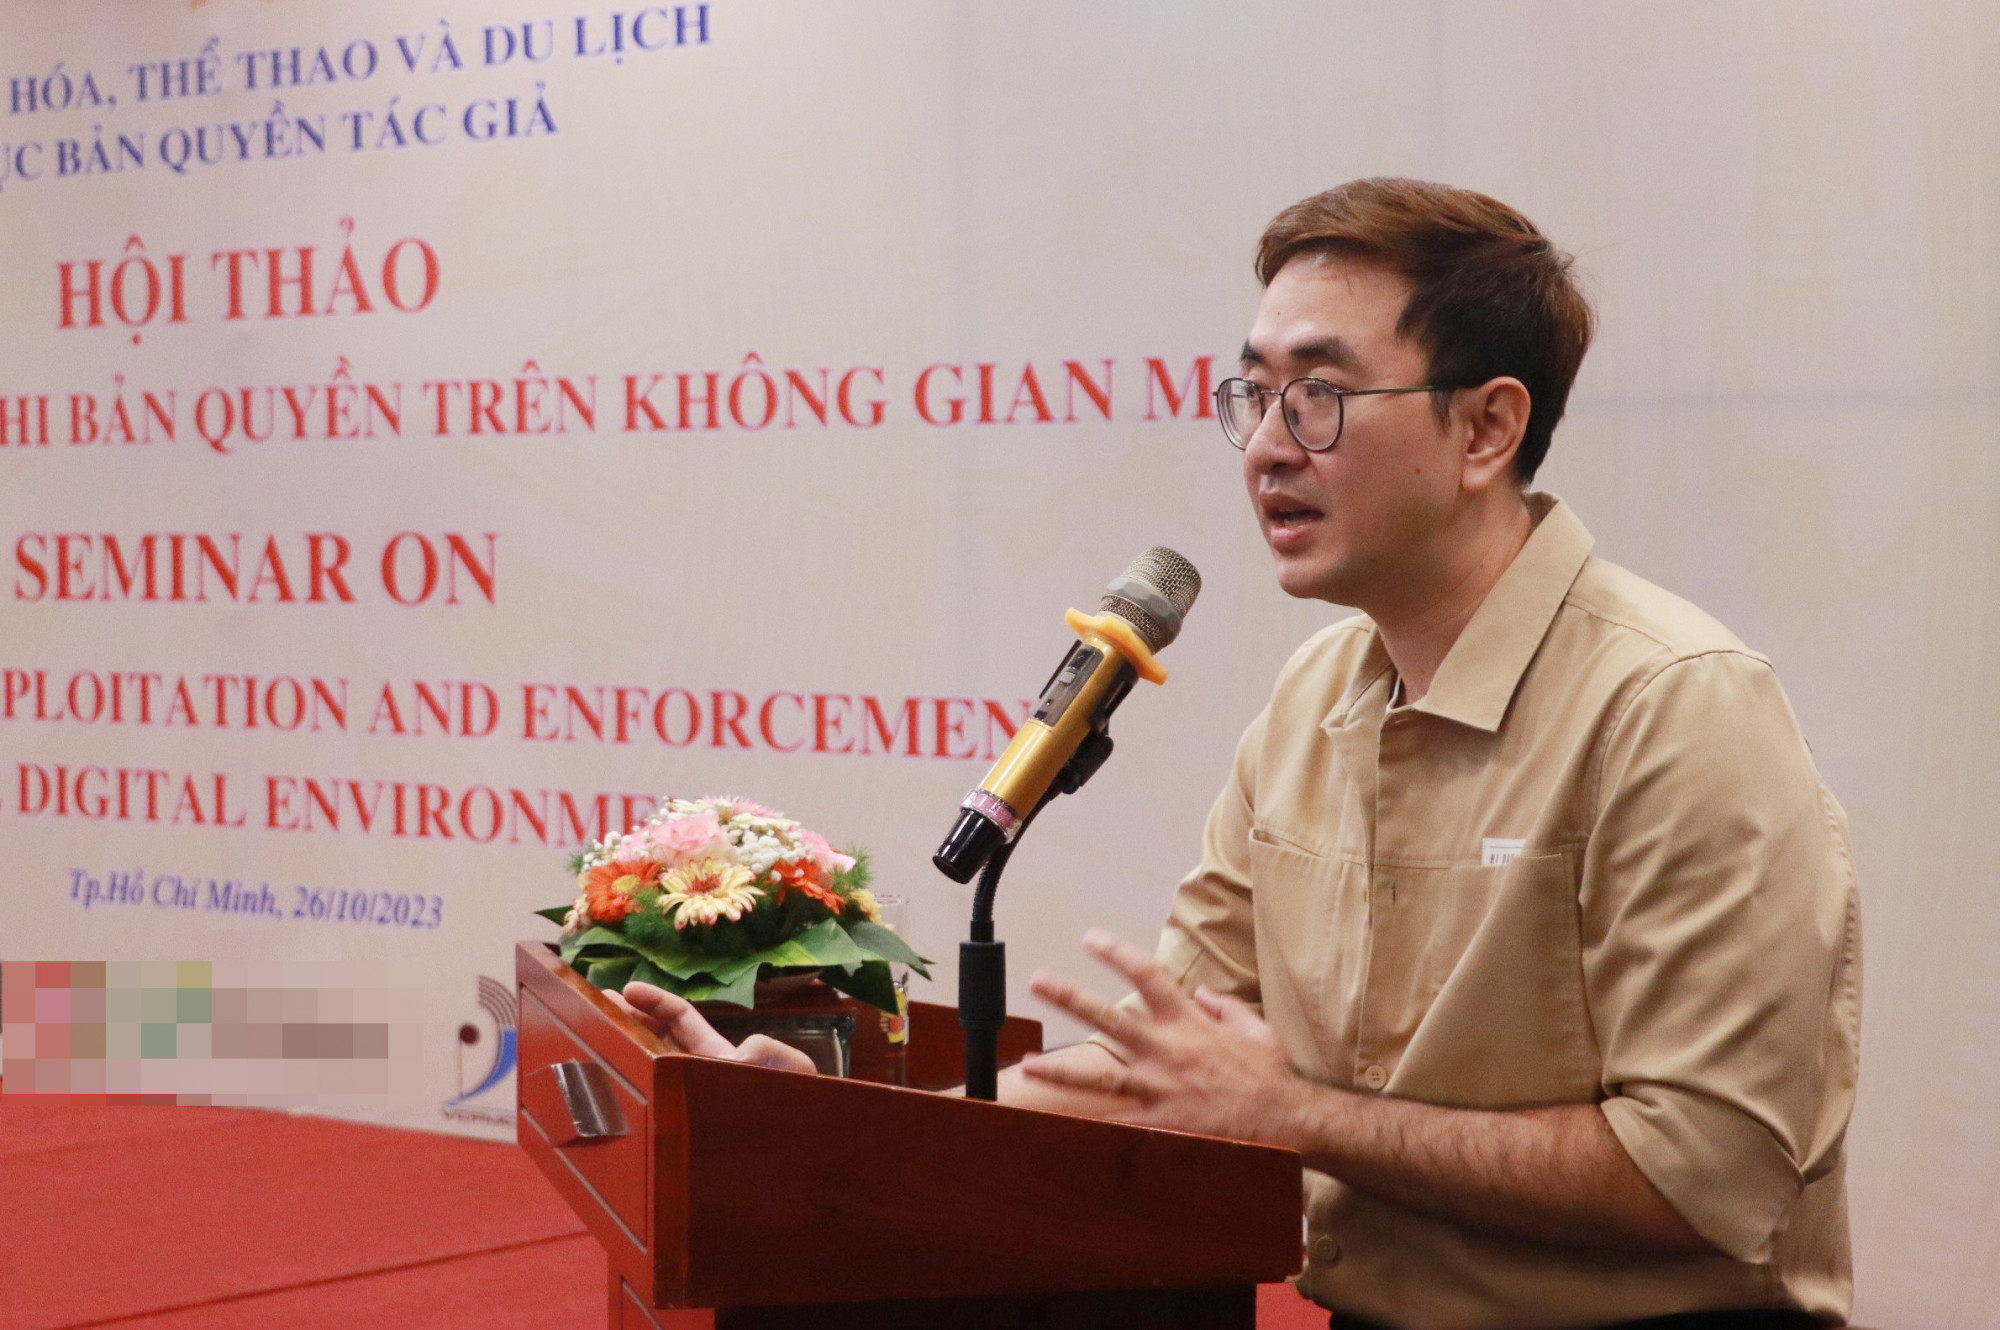 Ông Lê Hoàng Thạch, Giám đốc Công ty TNHH Công nghệ WEWE chia sẻ về việc vi phạm bản quyền với lĩnh vực sách nói